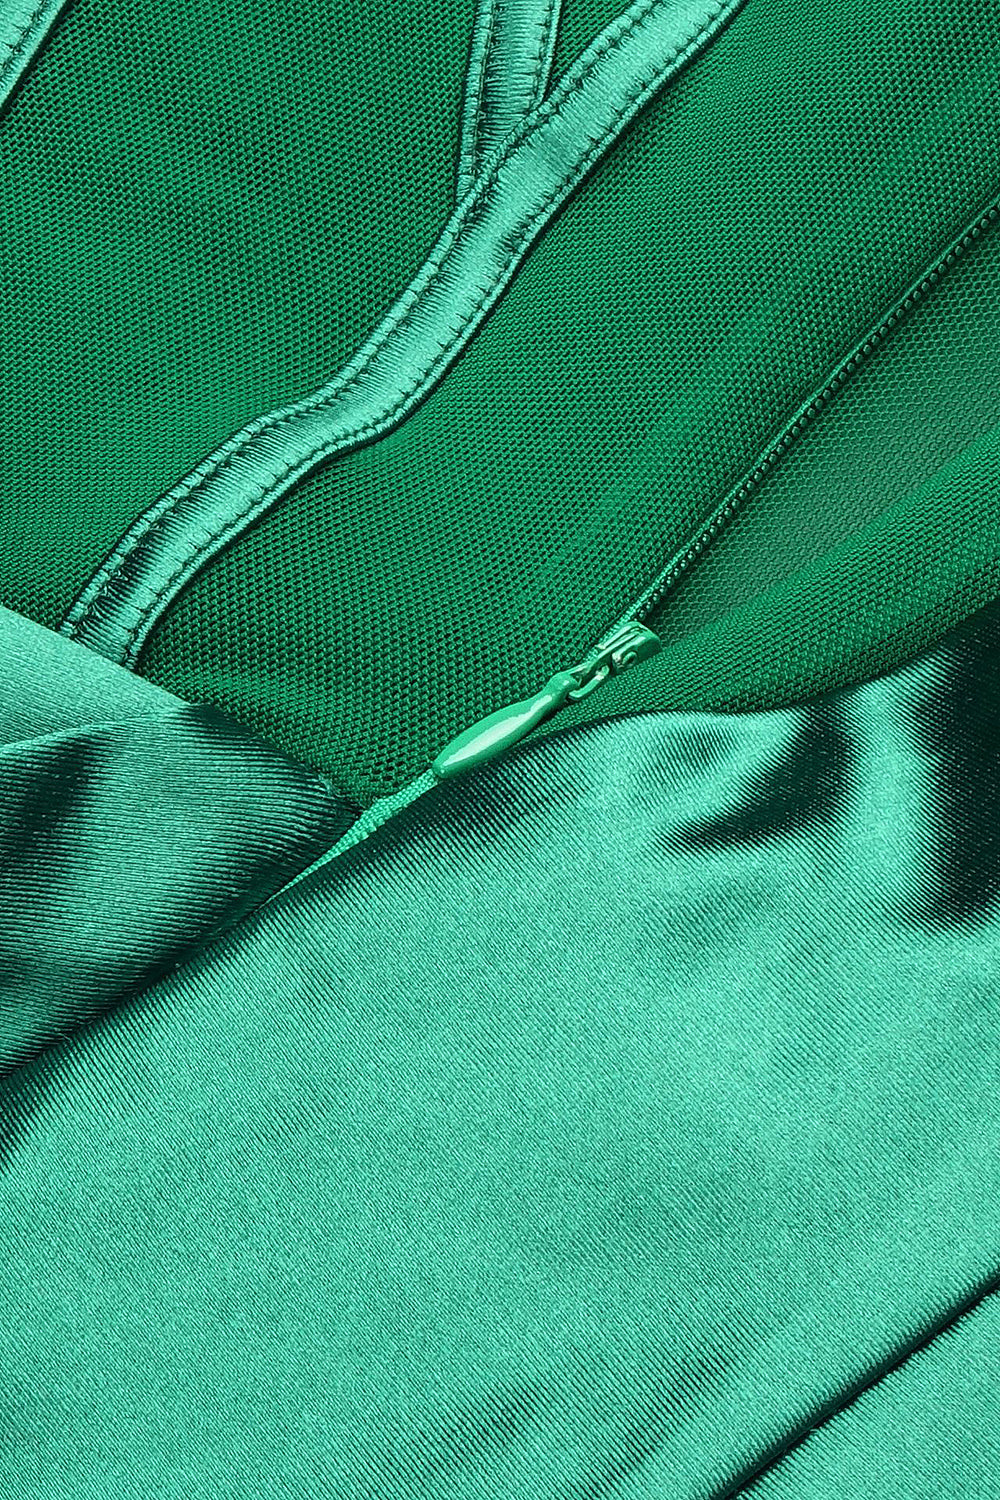 Vestido maxi verde de malha com painel sem mangas de um ombro